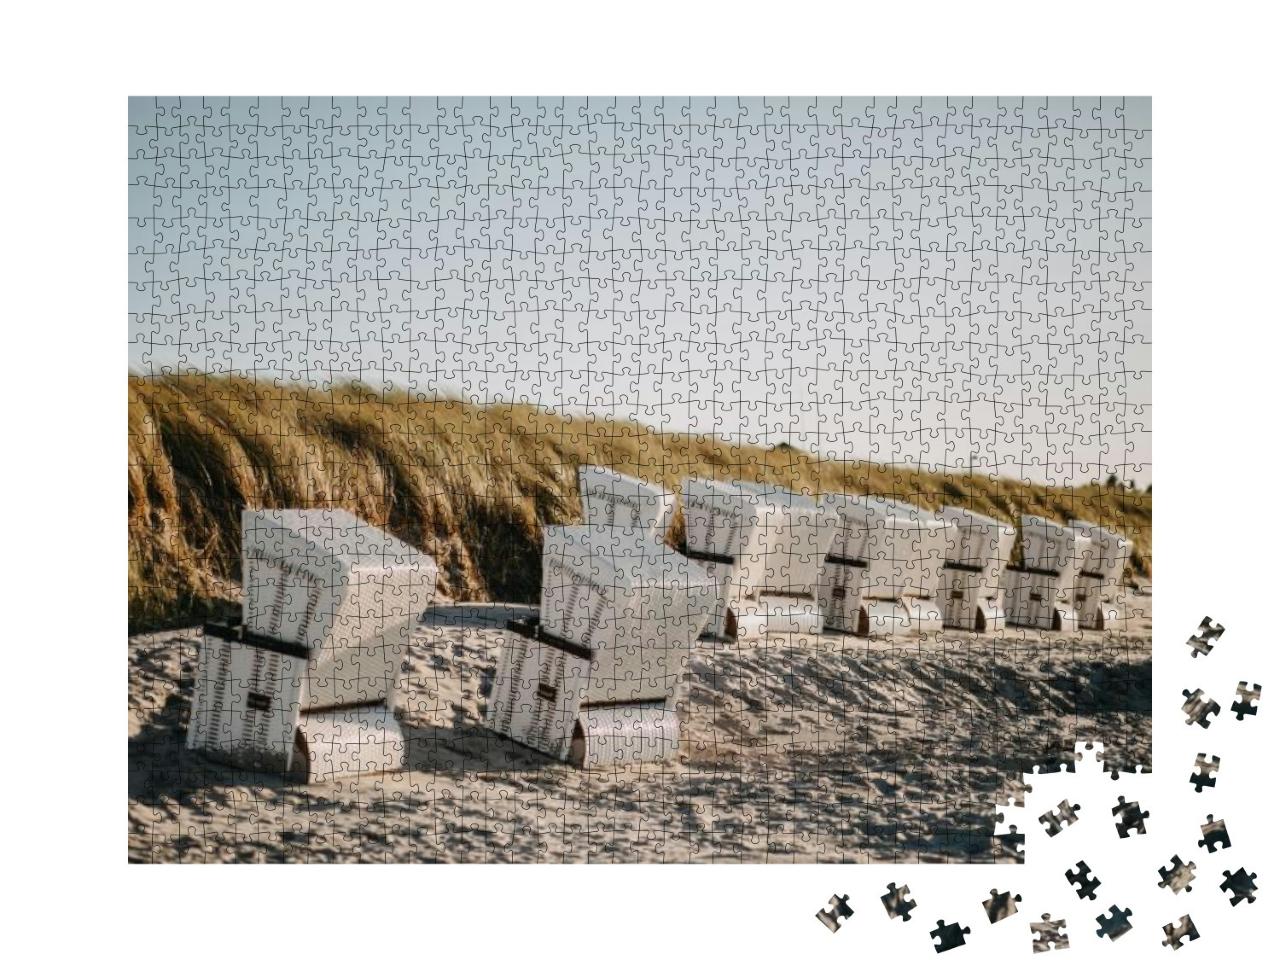 Puzzle 1000 Teile „Überdachte Strandkörbe bei Wind“